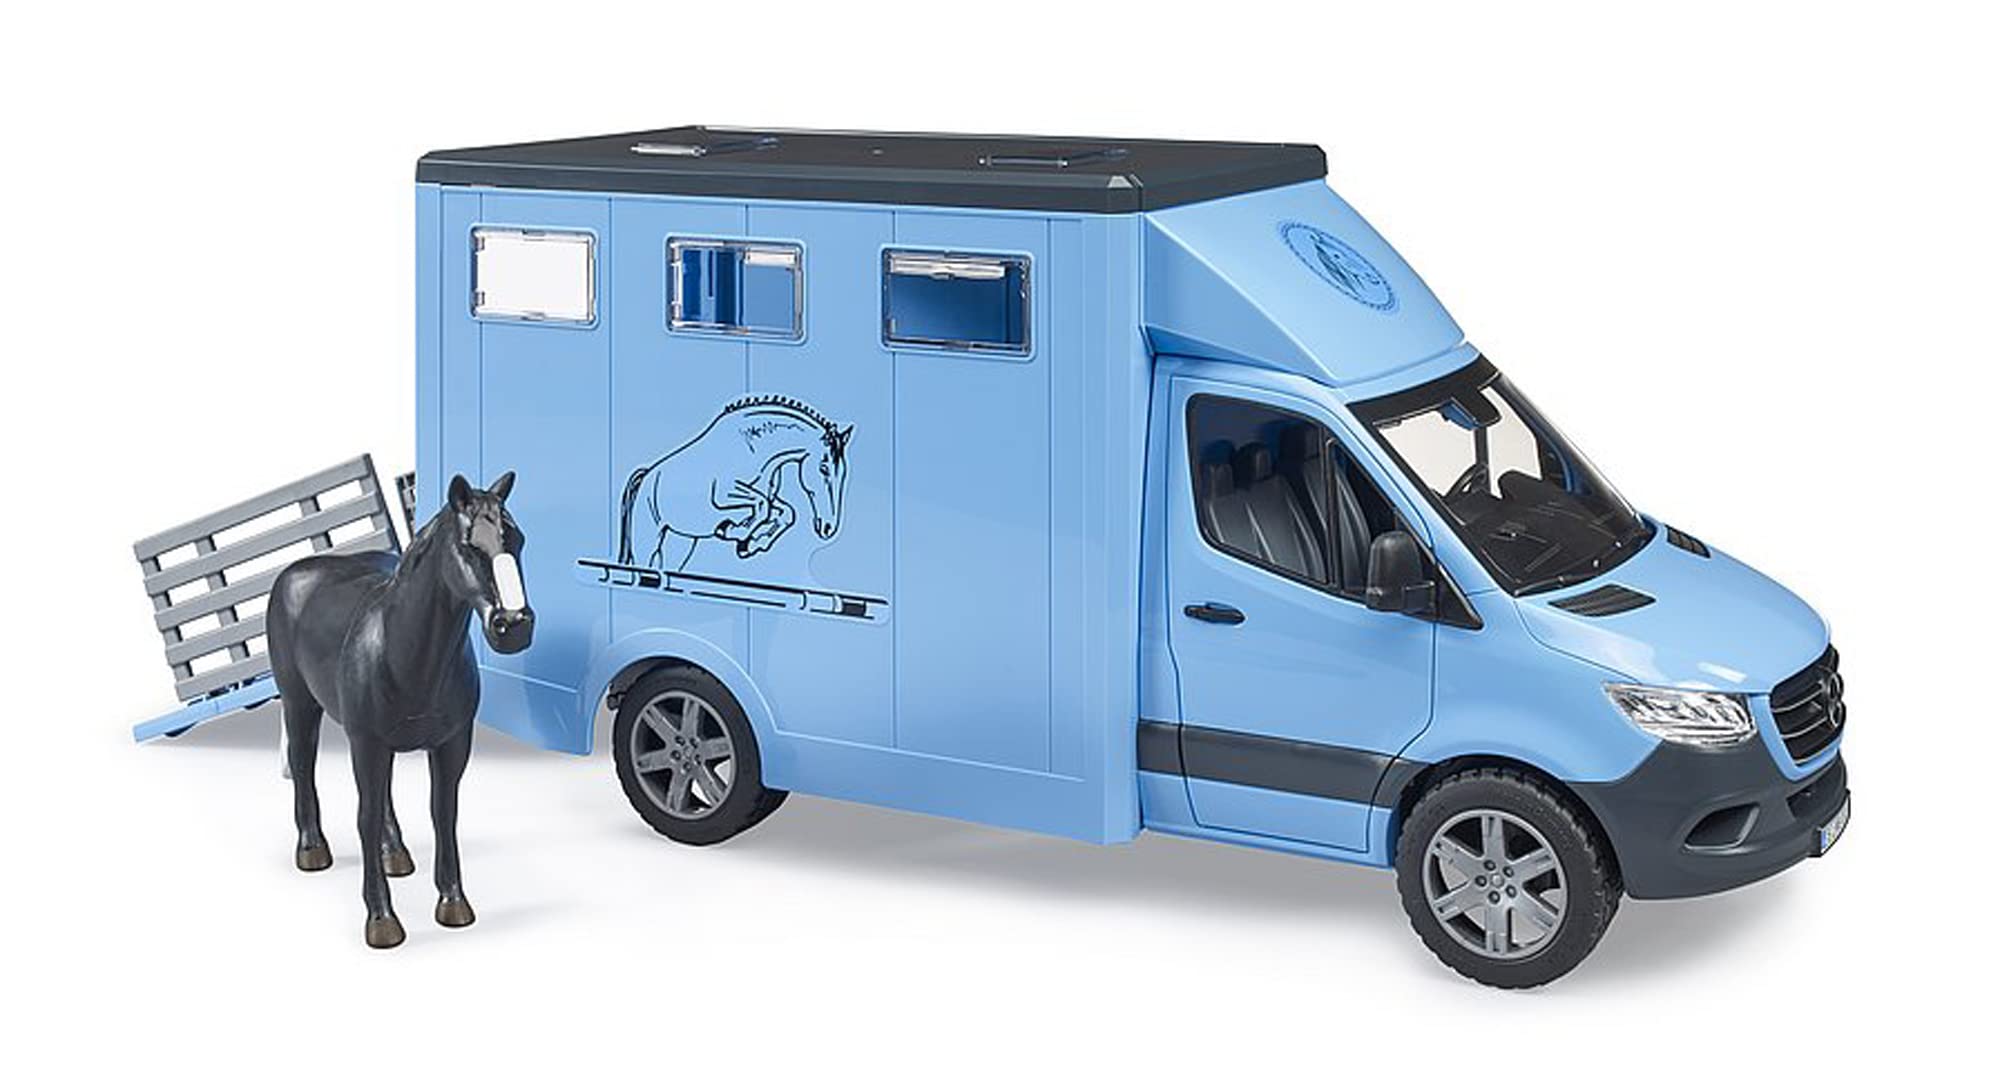 Merchandising Bruder: 2674 - Mb Sprinter Trasporto Animali Con 1 Cavallo NUOVO SIGILLATO, EDIZIONE DEL 28/03/2022 SUBITO DISPONIBILE